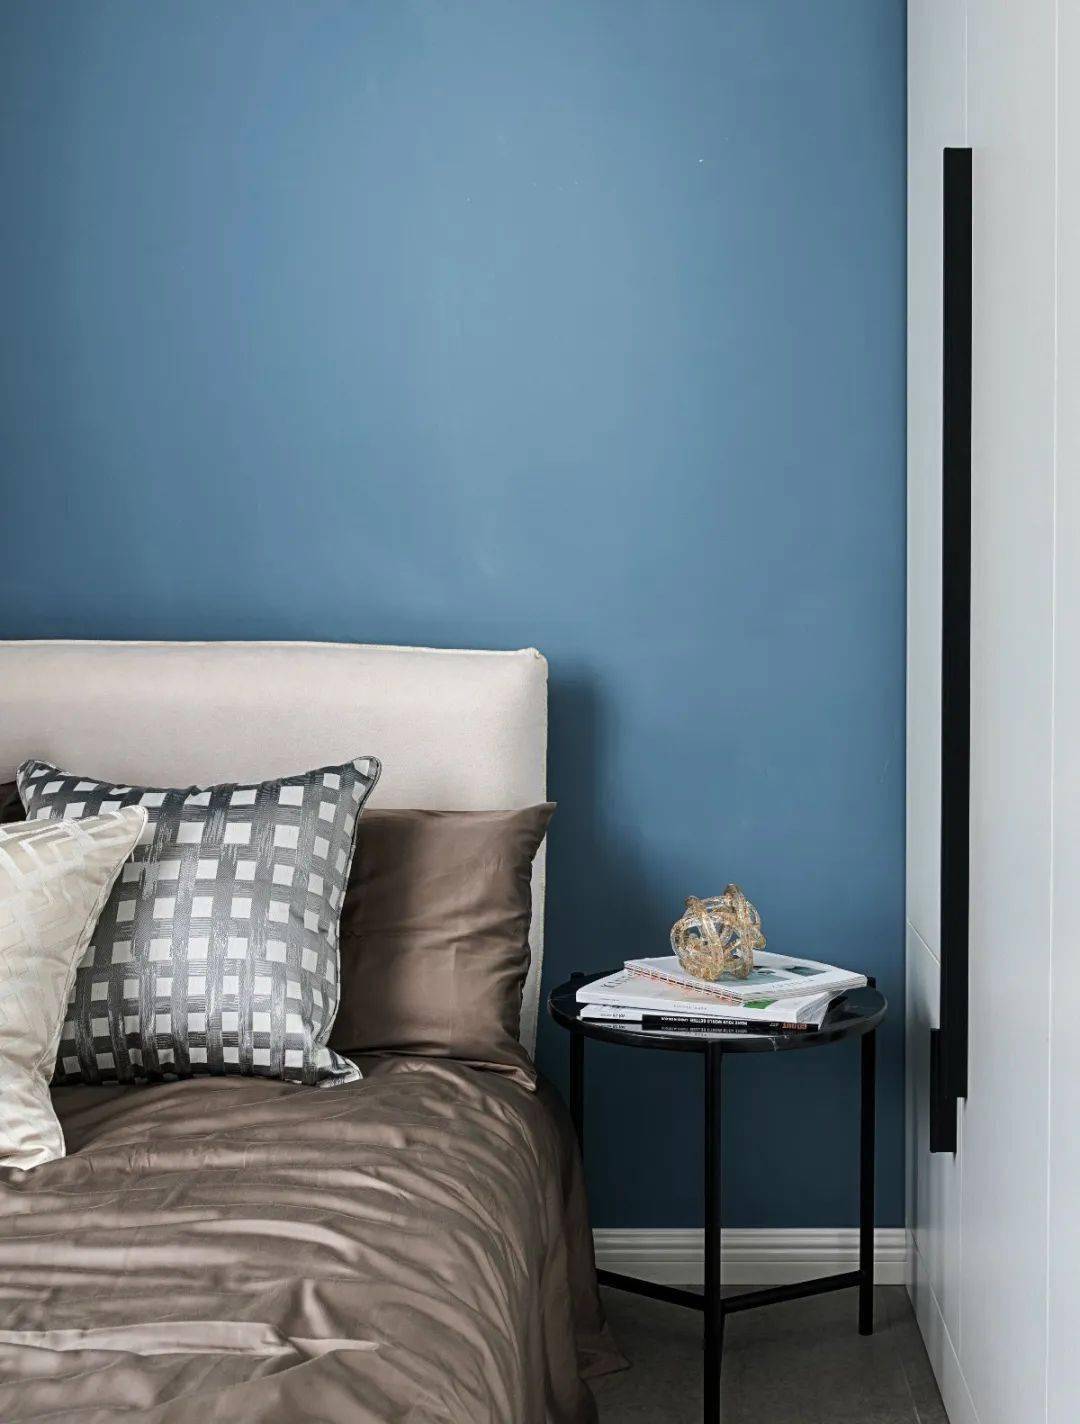 卧室空间在蓝色的床头墙基础,布置米白色布艺床,香槟色的床单,也